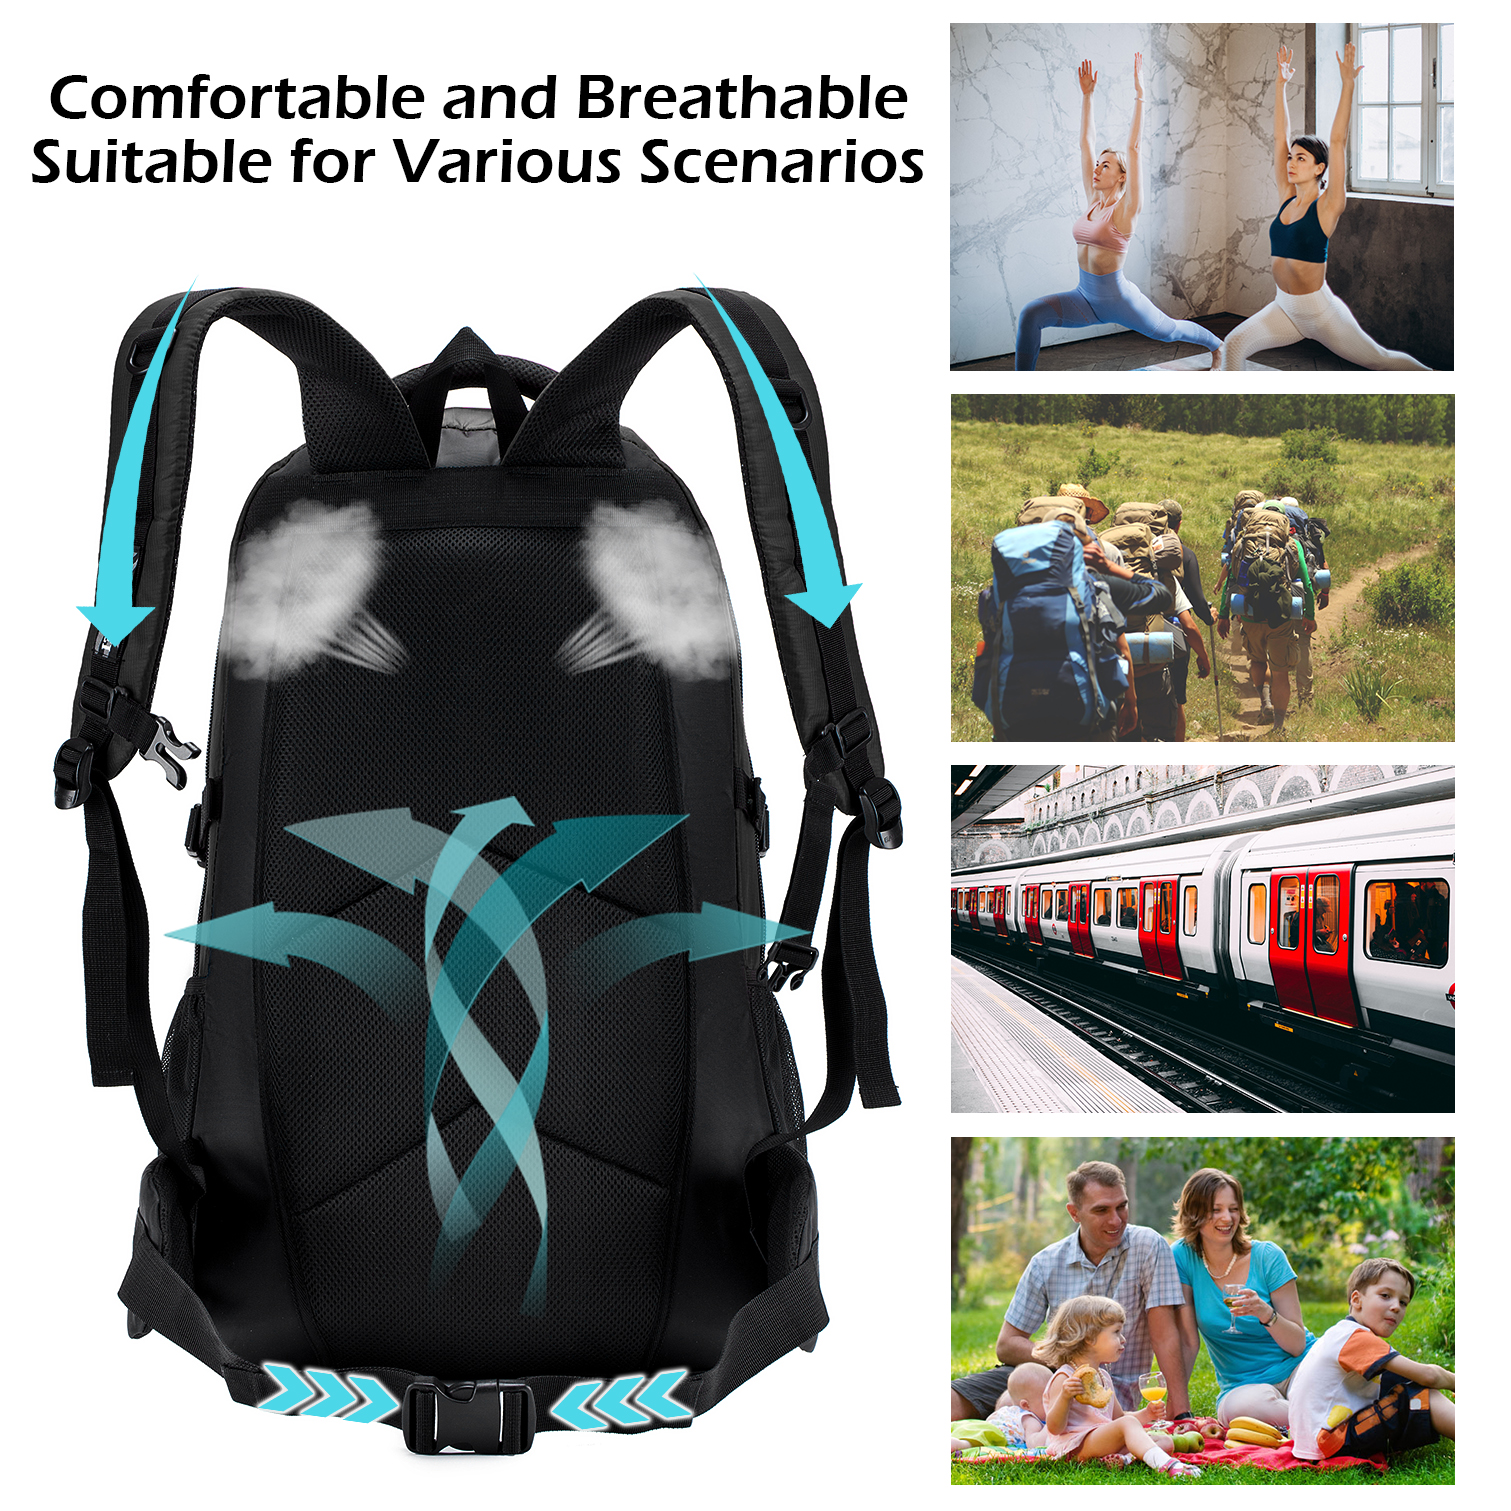 BAGZY Travel Backpack 70L Trekking Backpack Laptop Backpack 15.6 inch Large Cabin Bag Rucksack Cabin Hand Luggage Suitcase Daypack Travel Bag (Black) - image 5 of 6